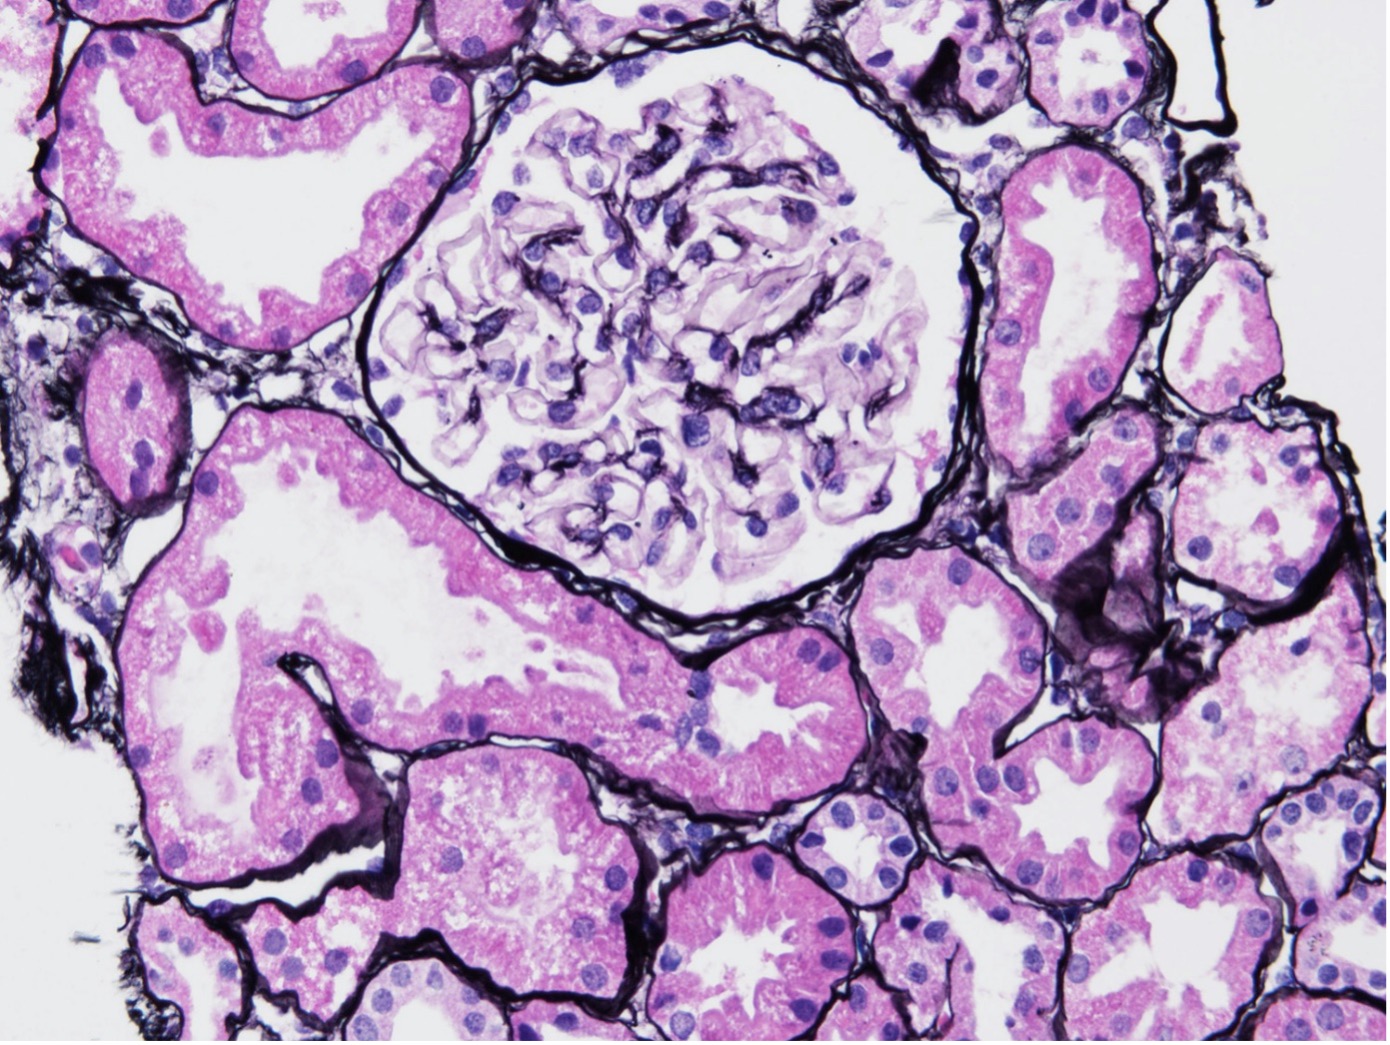 Vergrößerte Darstellung eines Nierenschnitts bei Lupus-Nephritis der Klasse I